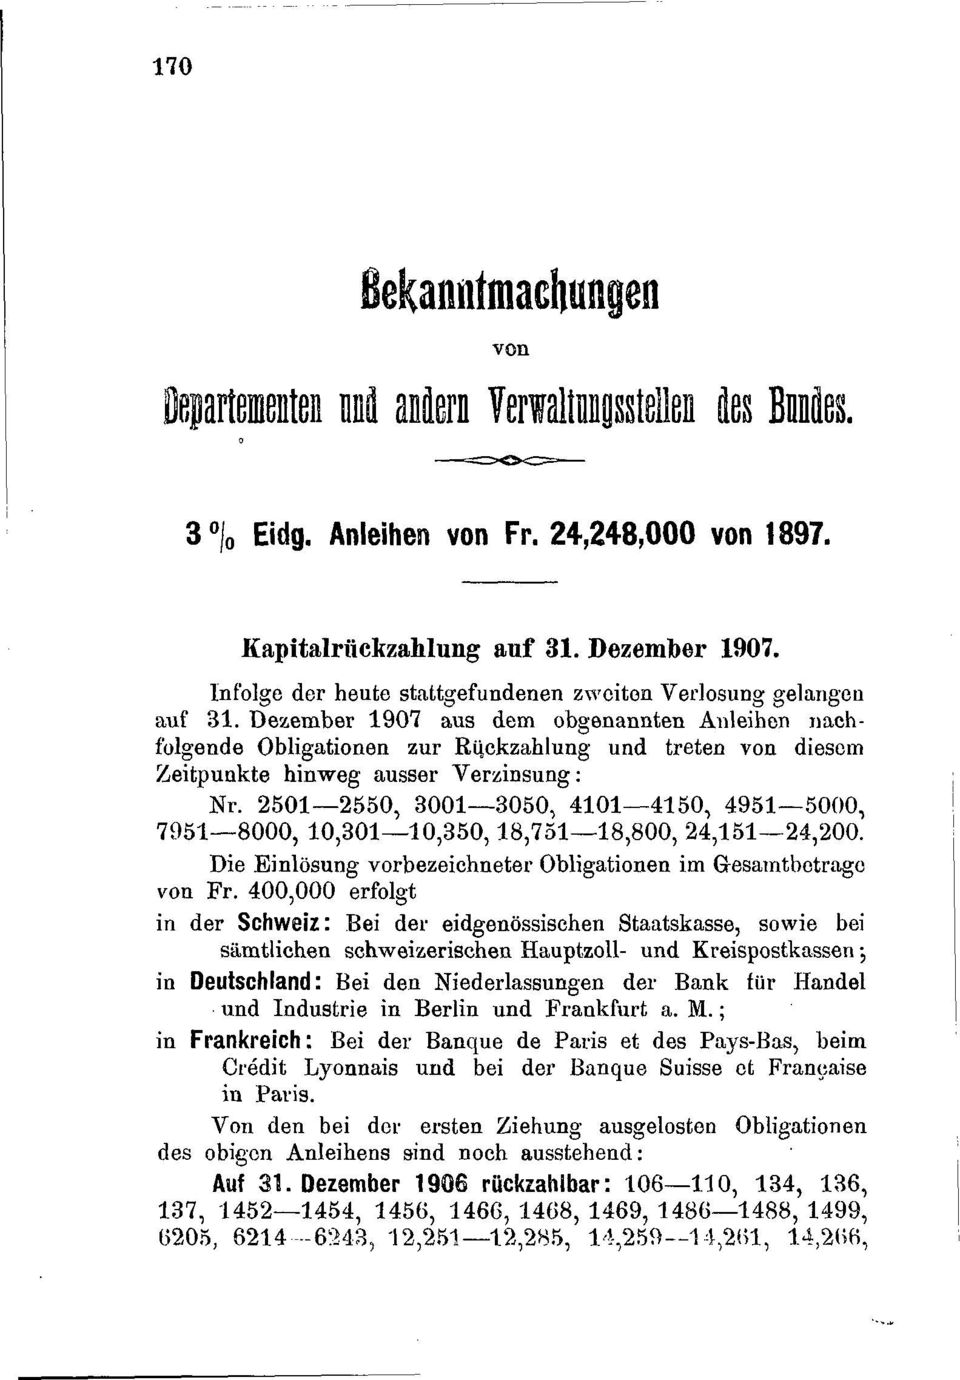 Dezember 1907 aus dem obgenannten Anleihen nachfolgende Obligationen zur Rückzahlung und treten von diesem Zeitpunkte hinweg ausser Verzinsung: Nr.